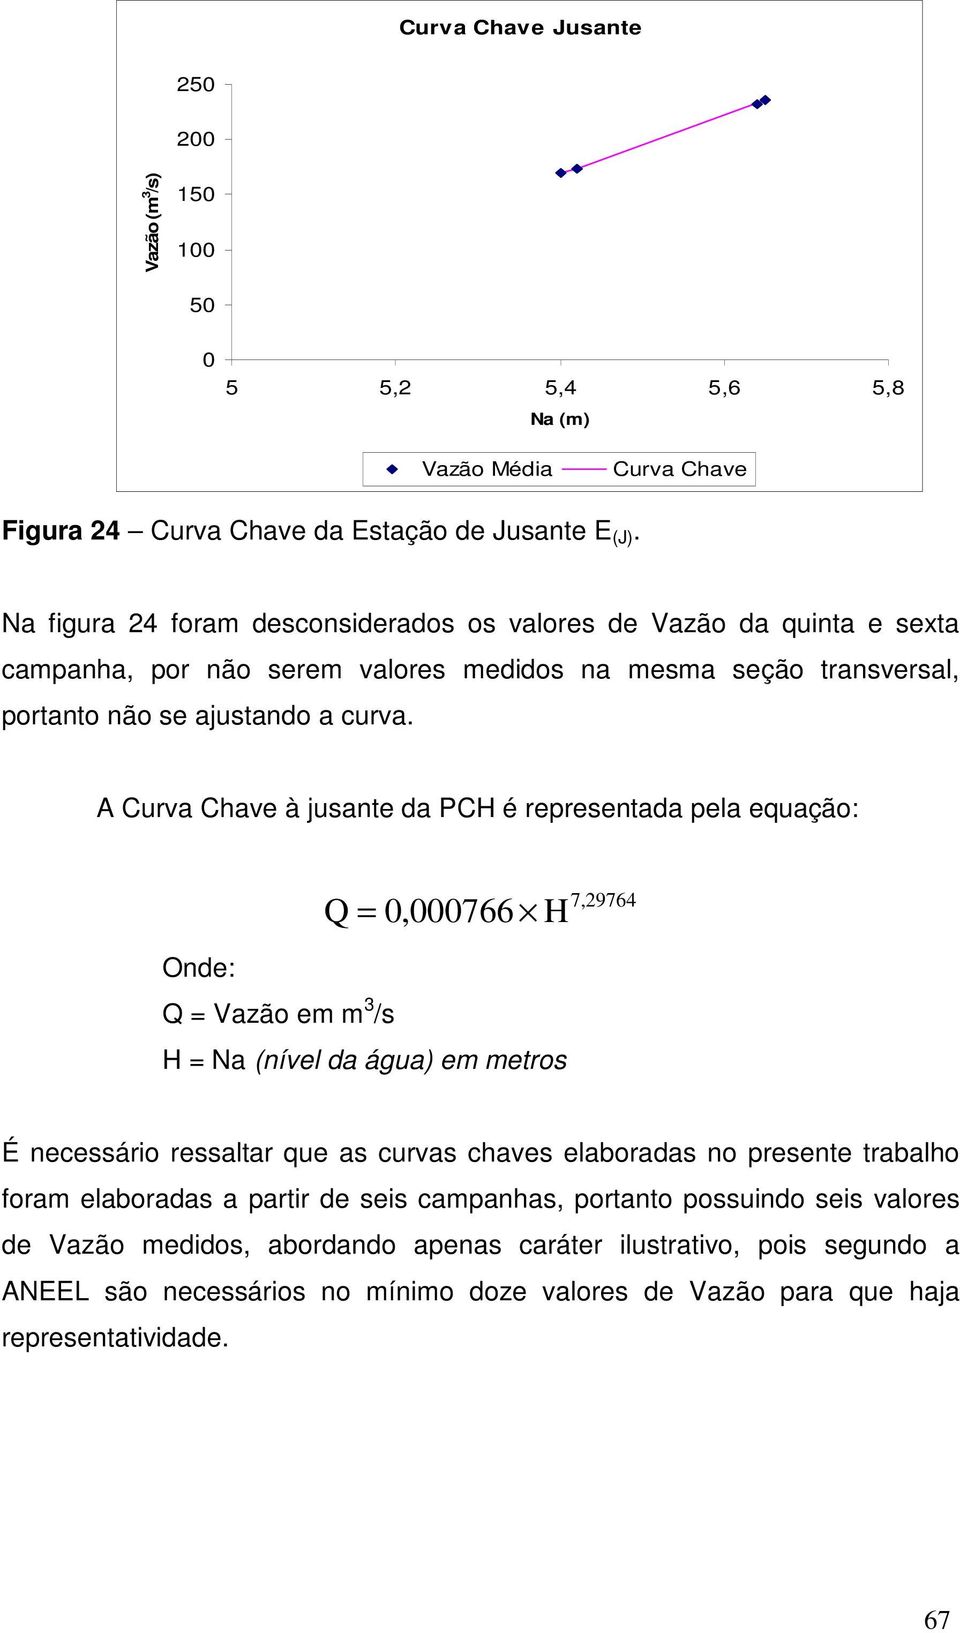 A Curva Chave à jusante da PCH é representada pela equação: Onde: Q = Vazão em m 3 /s Q = 0766 H = Na (nível da água) em metros 7,29764 H É necessário ressaltar que as curvas chaves elaboradas no